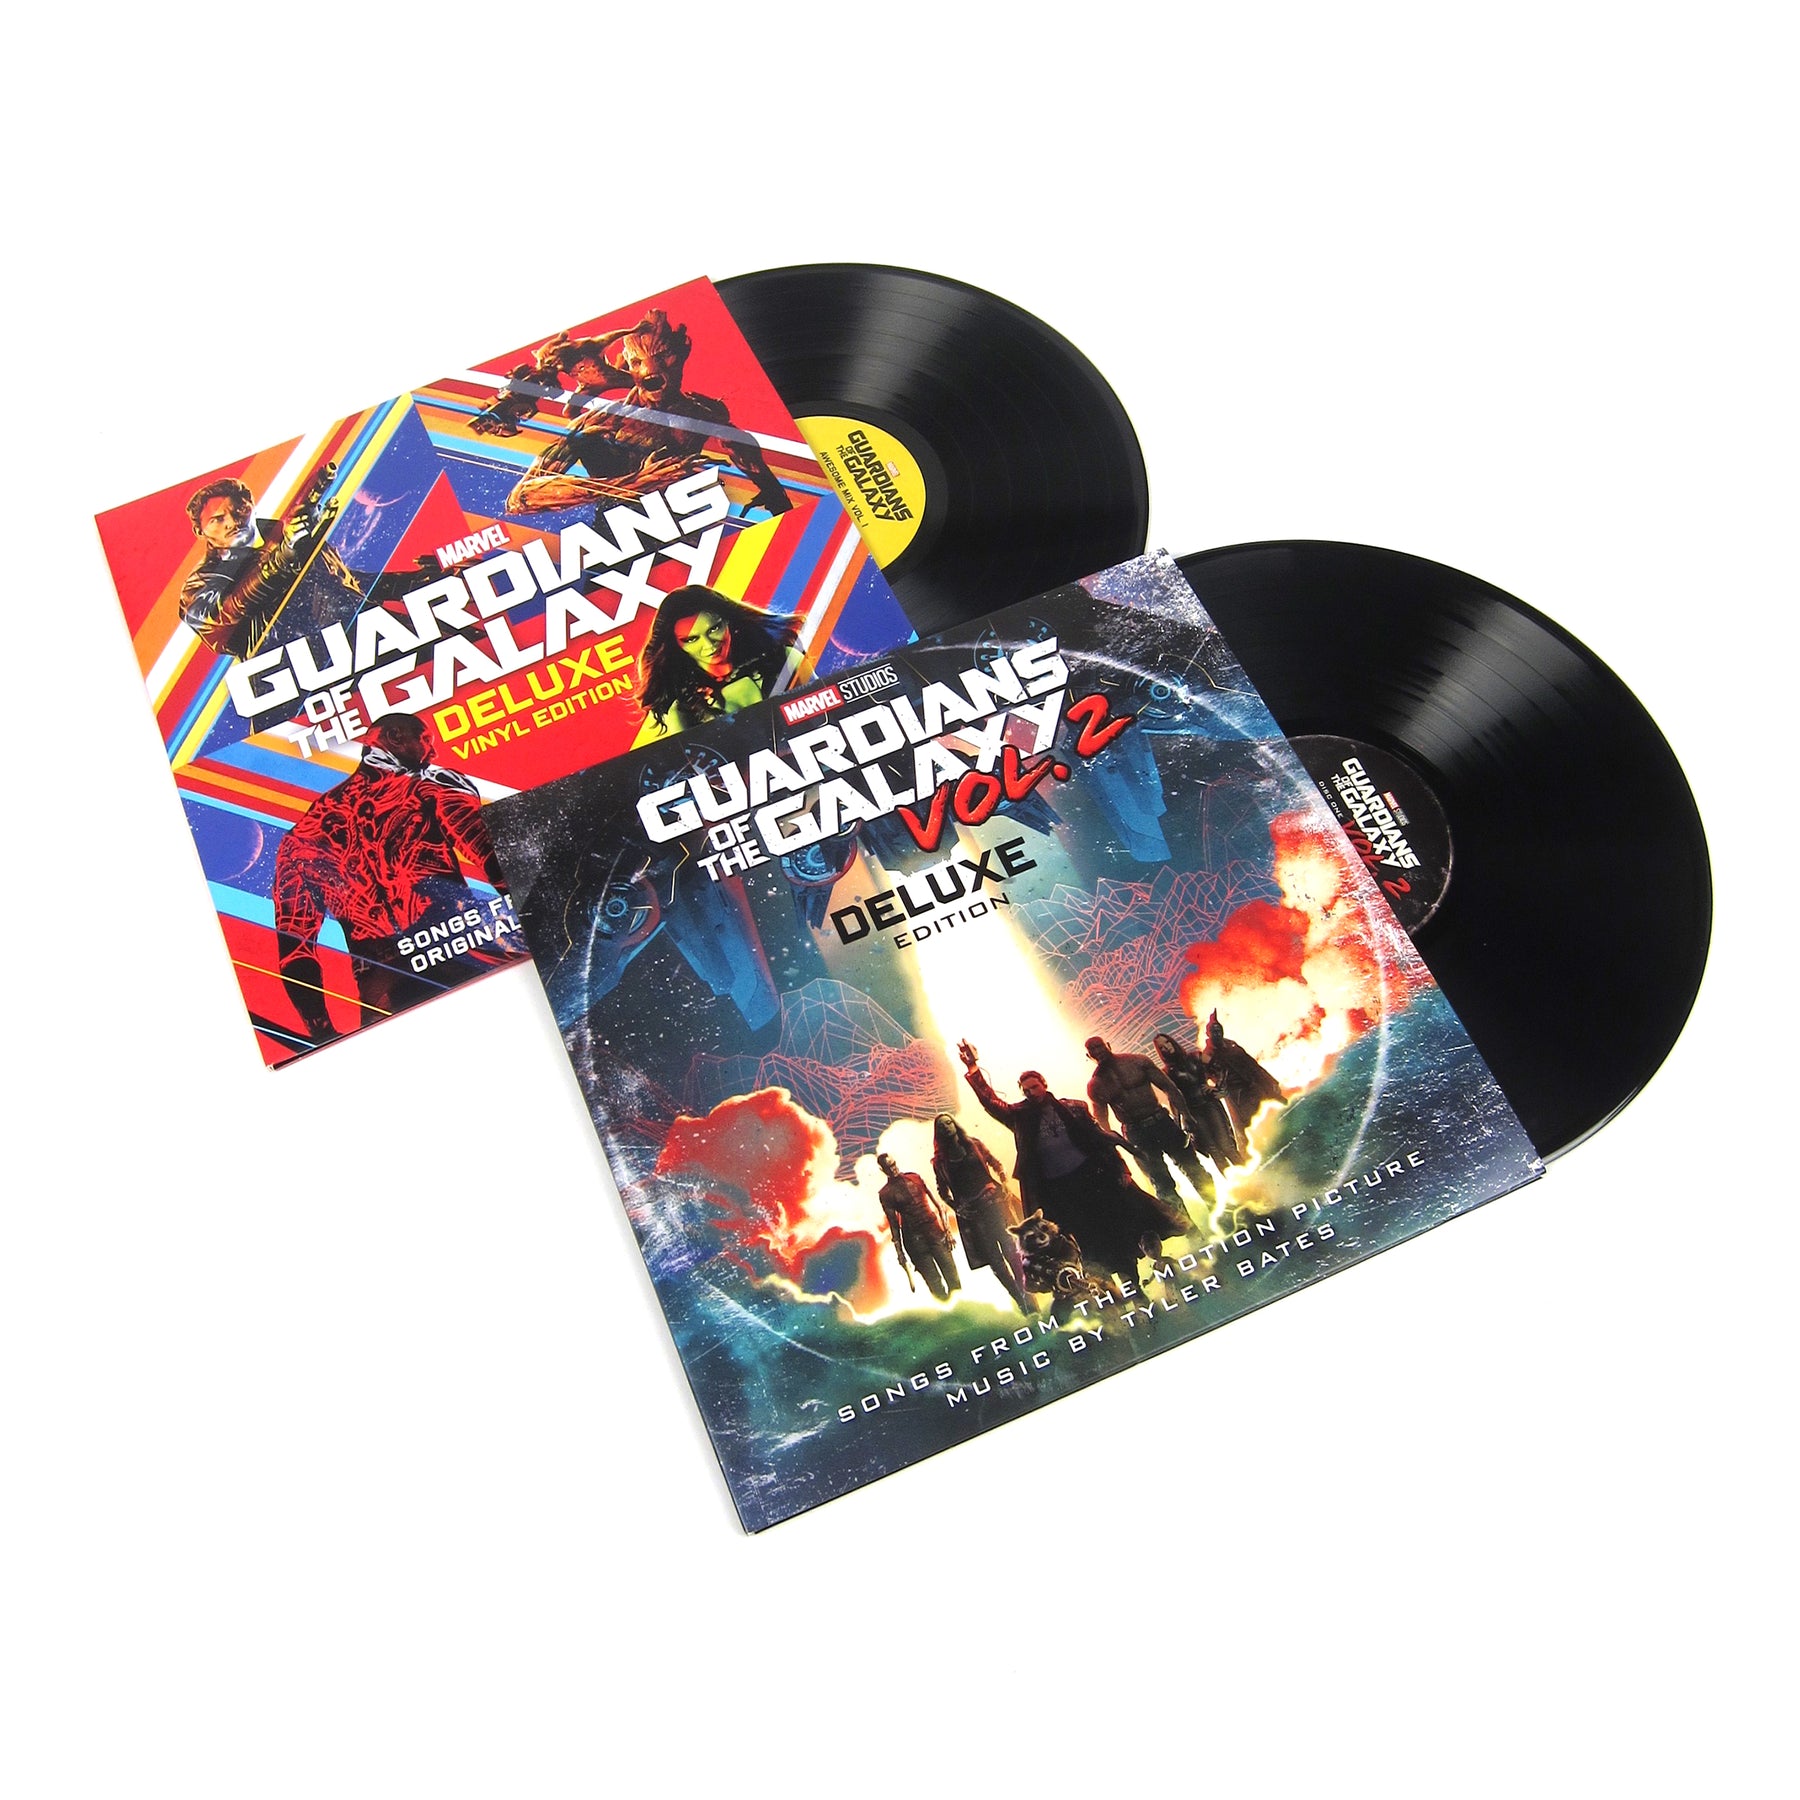 Guardians Of The Galaxy Vinyl Lp Album Pack Vol1 Vol2